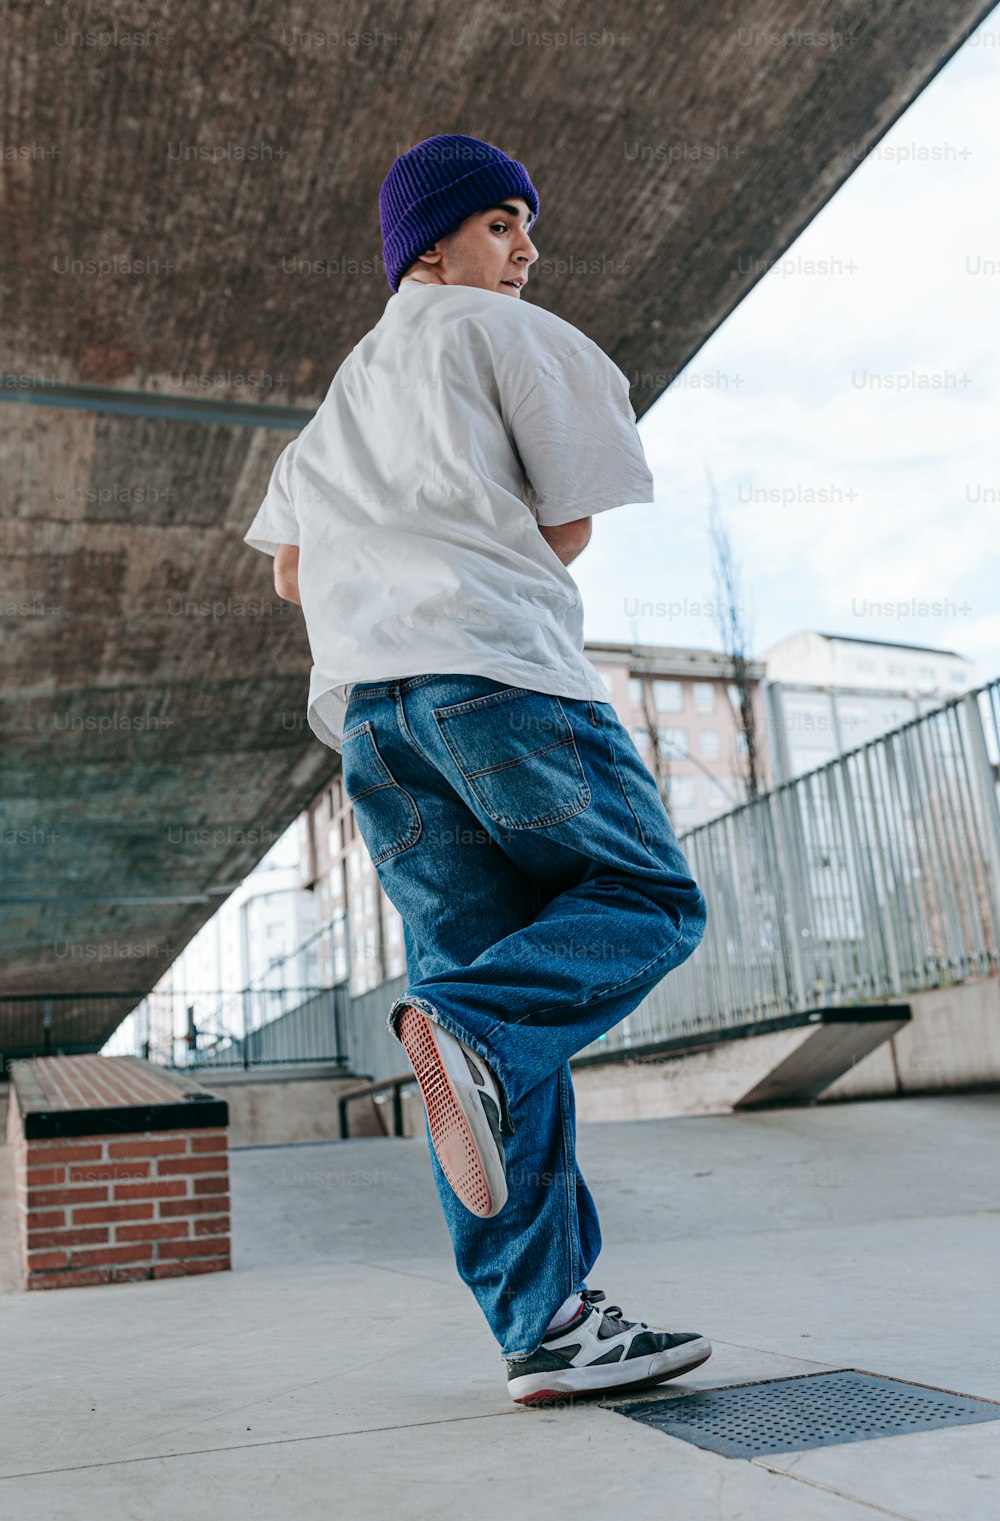 a young man riding a skateboard under a bridge